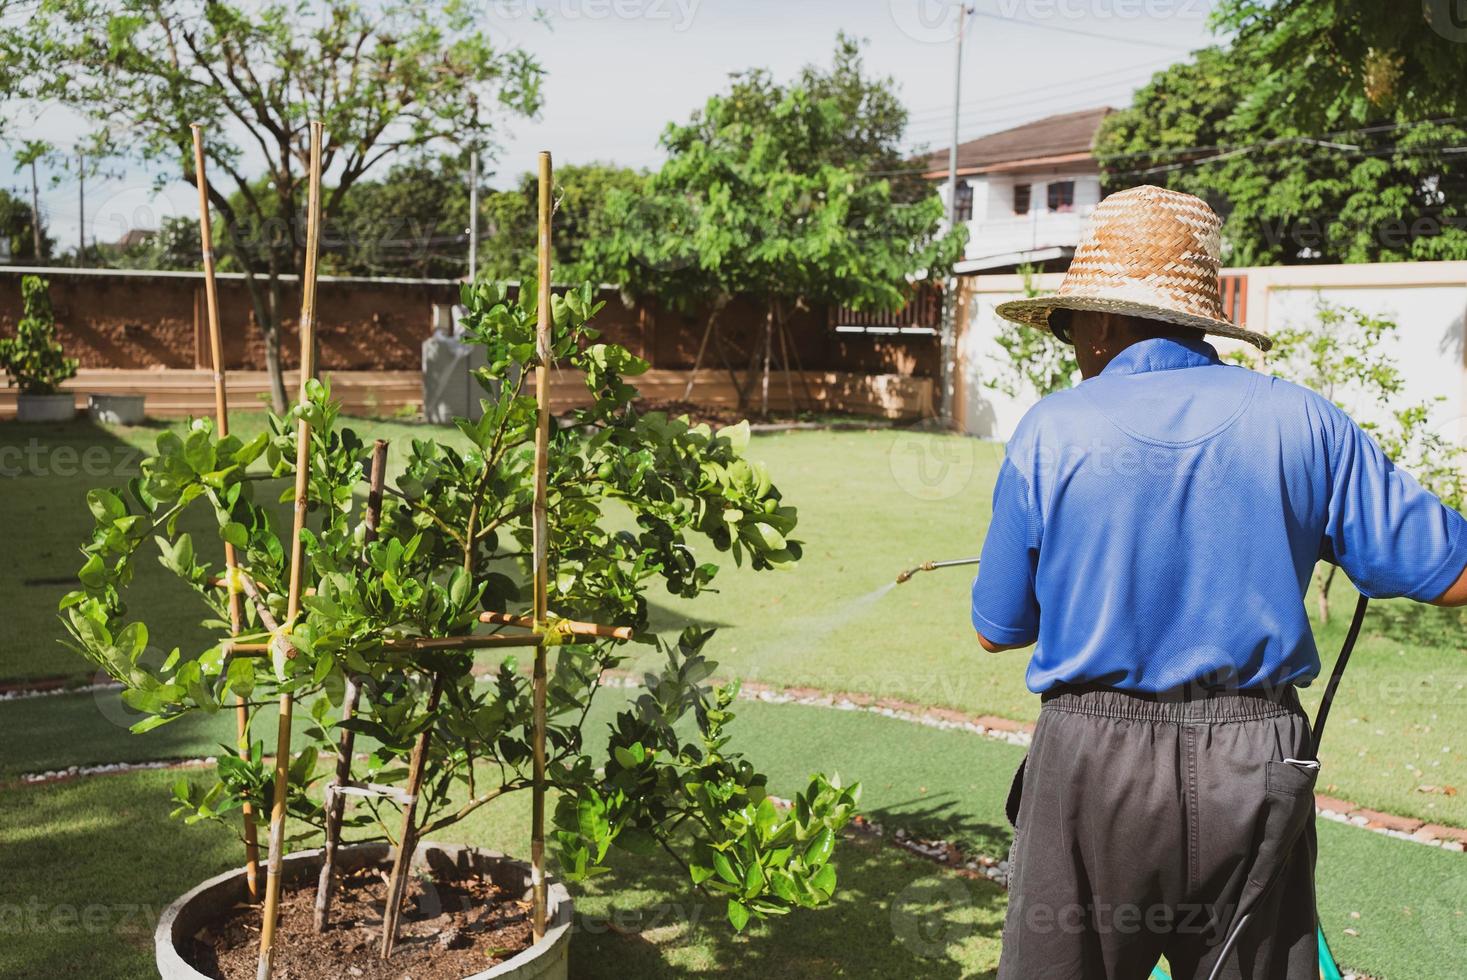 Senior Farmer sprühen organisches Insektizid auf Linde im Obstgarten foto